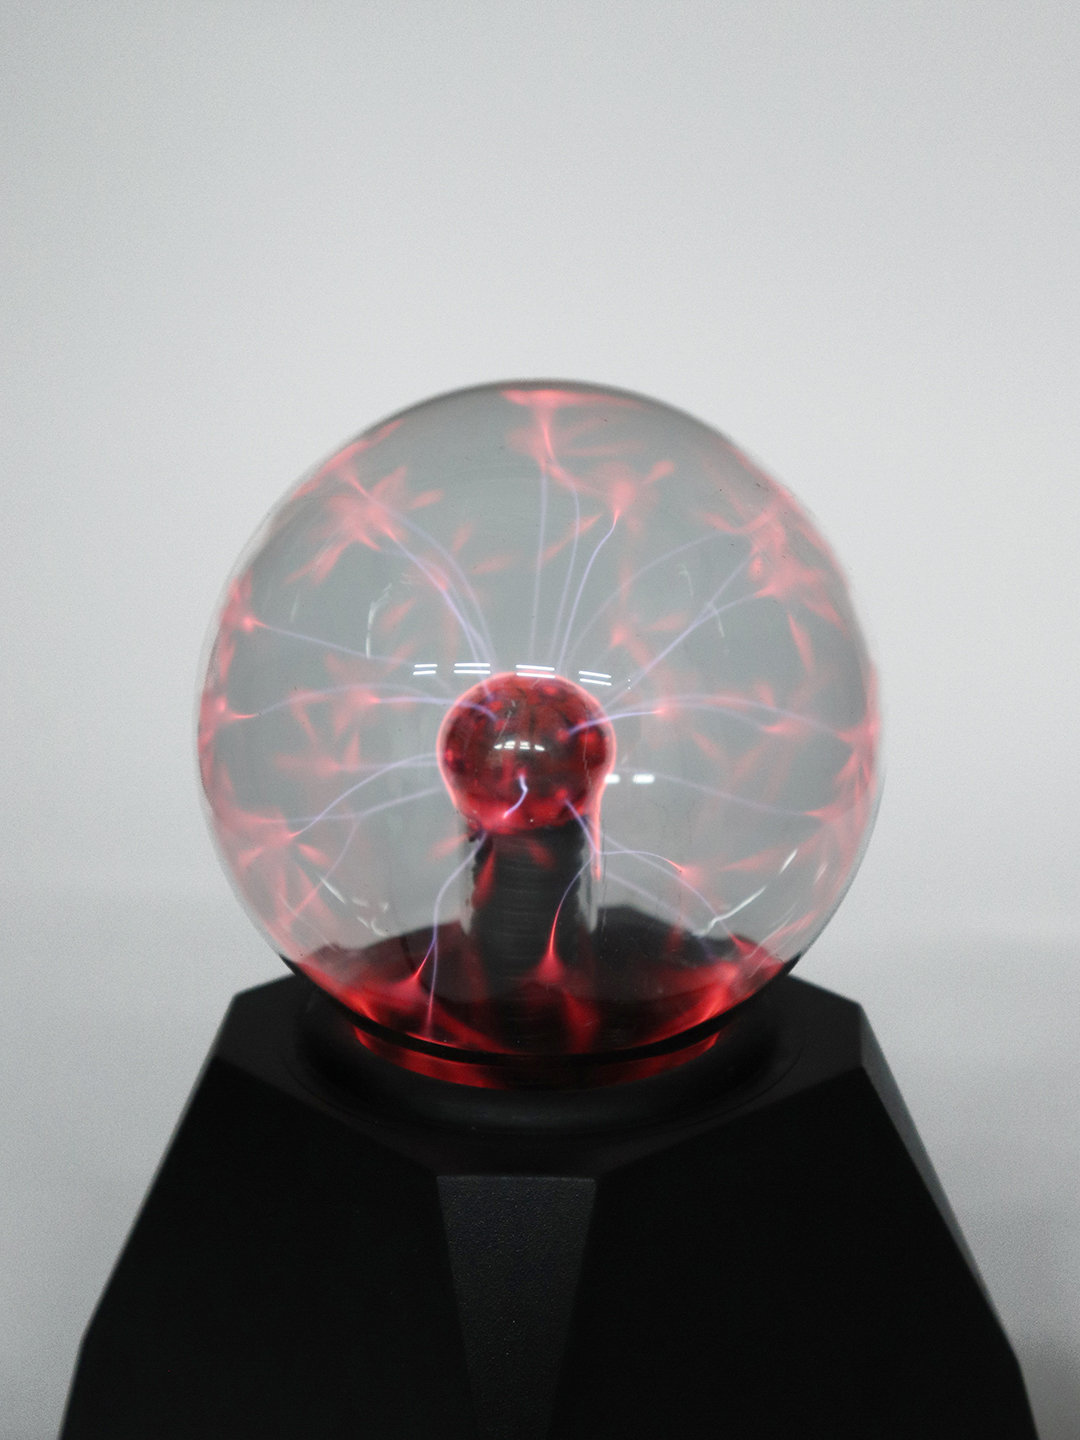 Плазменный шар Plasma Magic Ball, декоративный светильник, стеклянная сфера с электродом Тесла